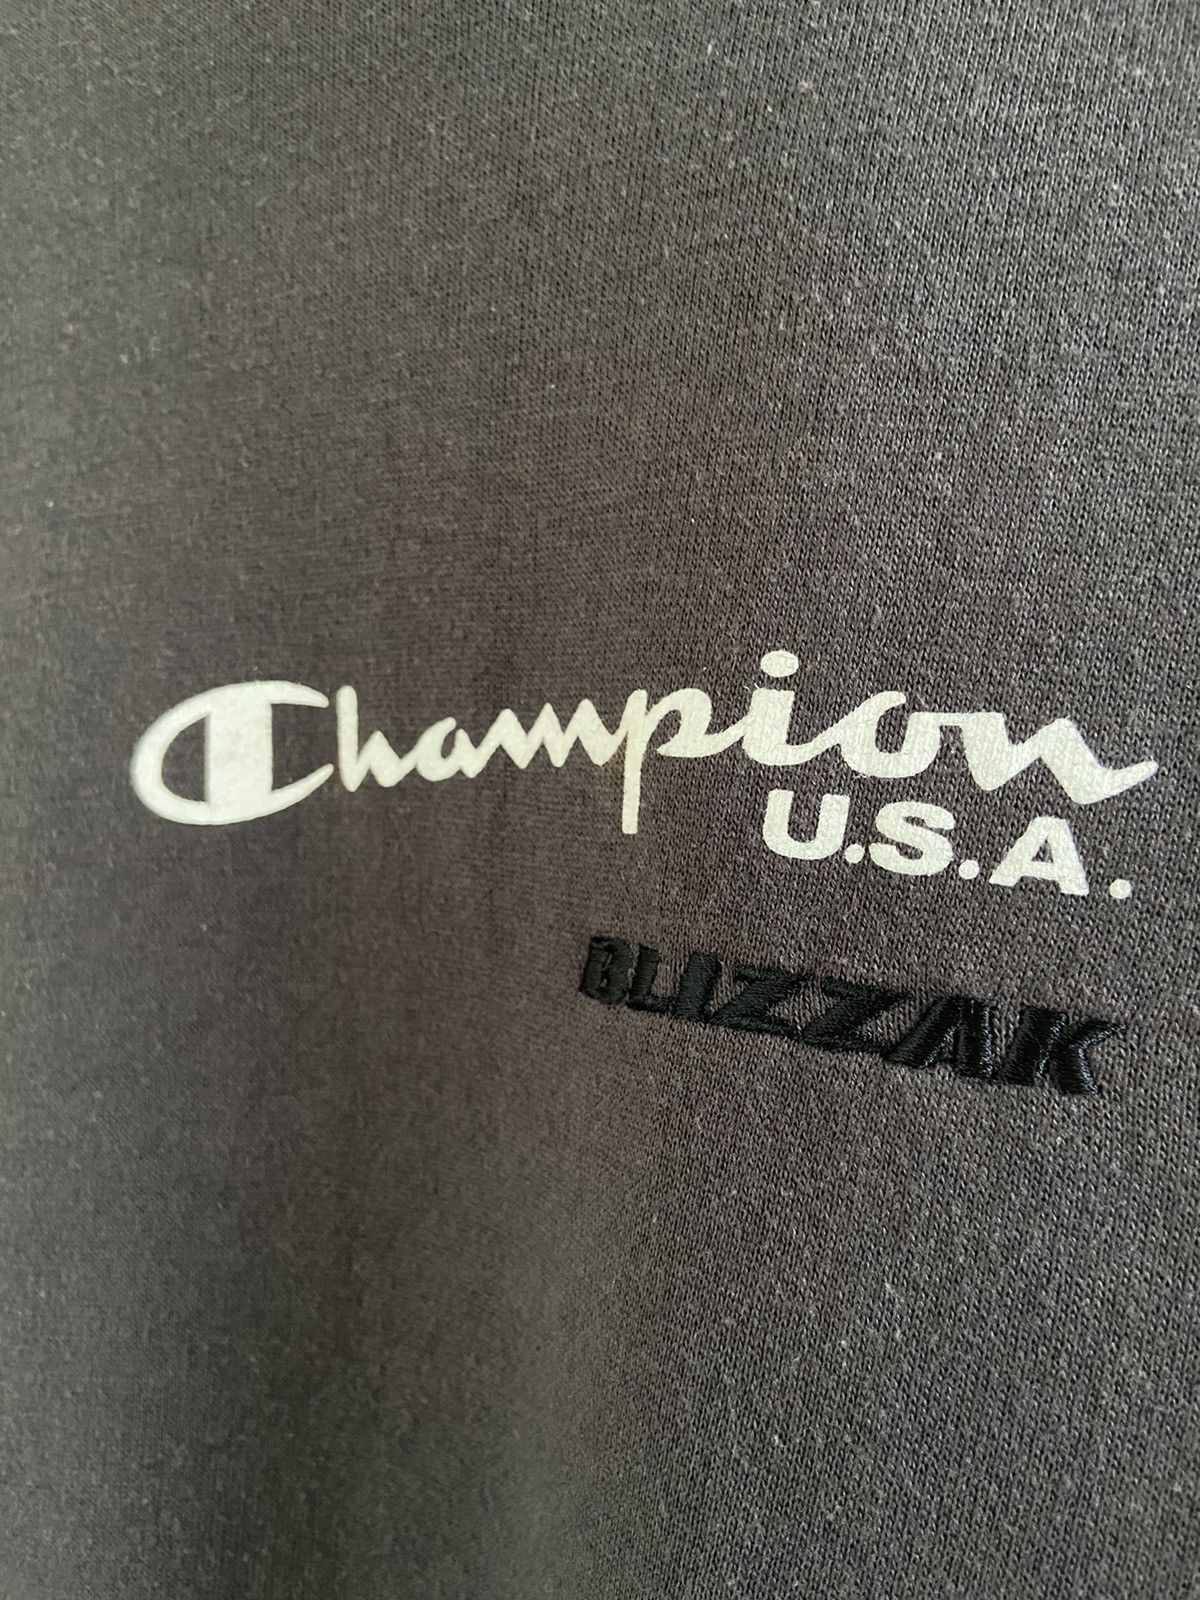 Champion x Blizzak Pullover Hoodie Sweatshirt - 3